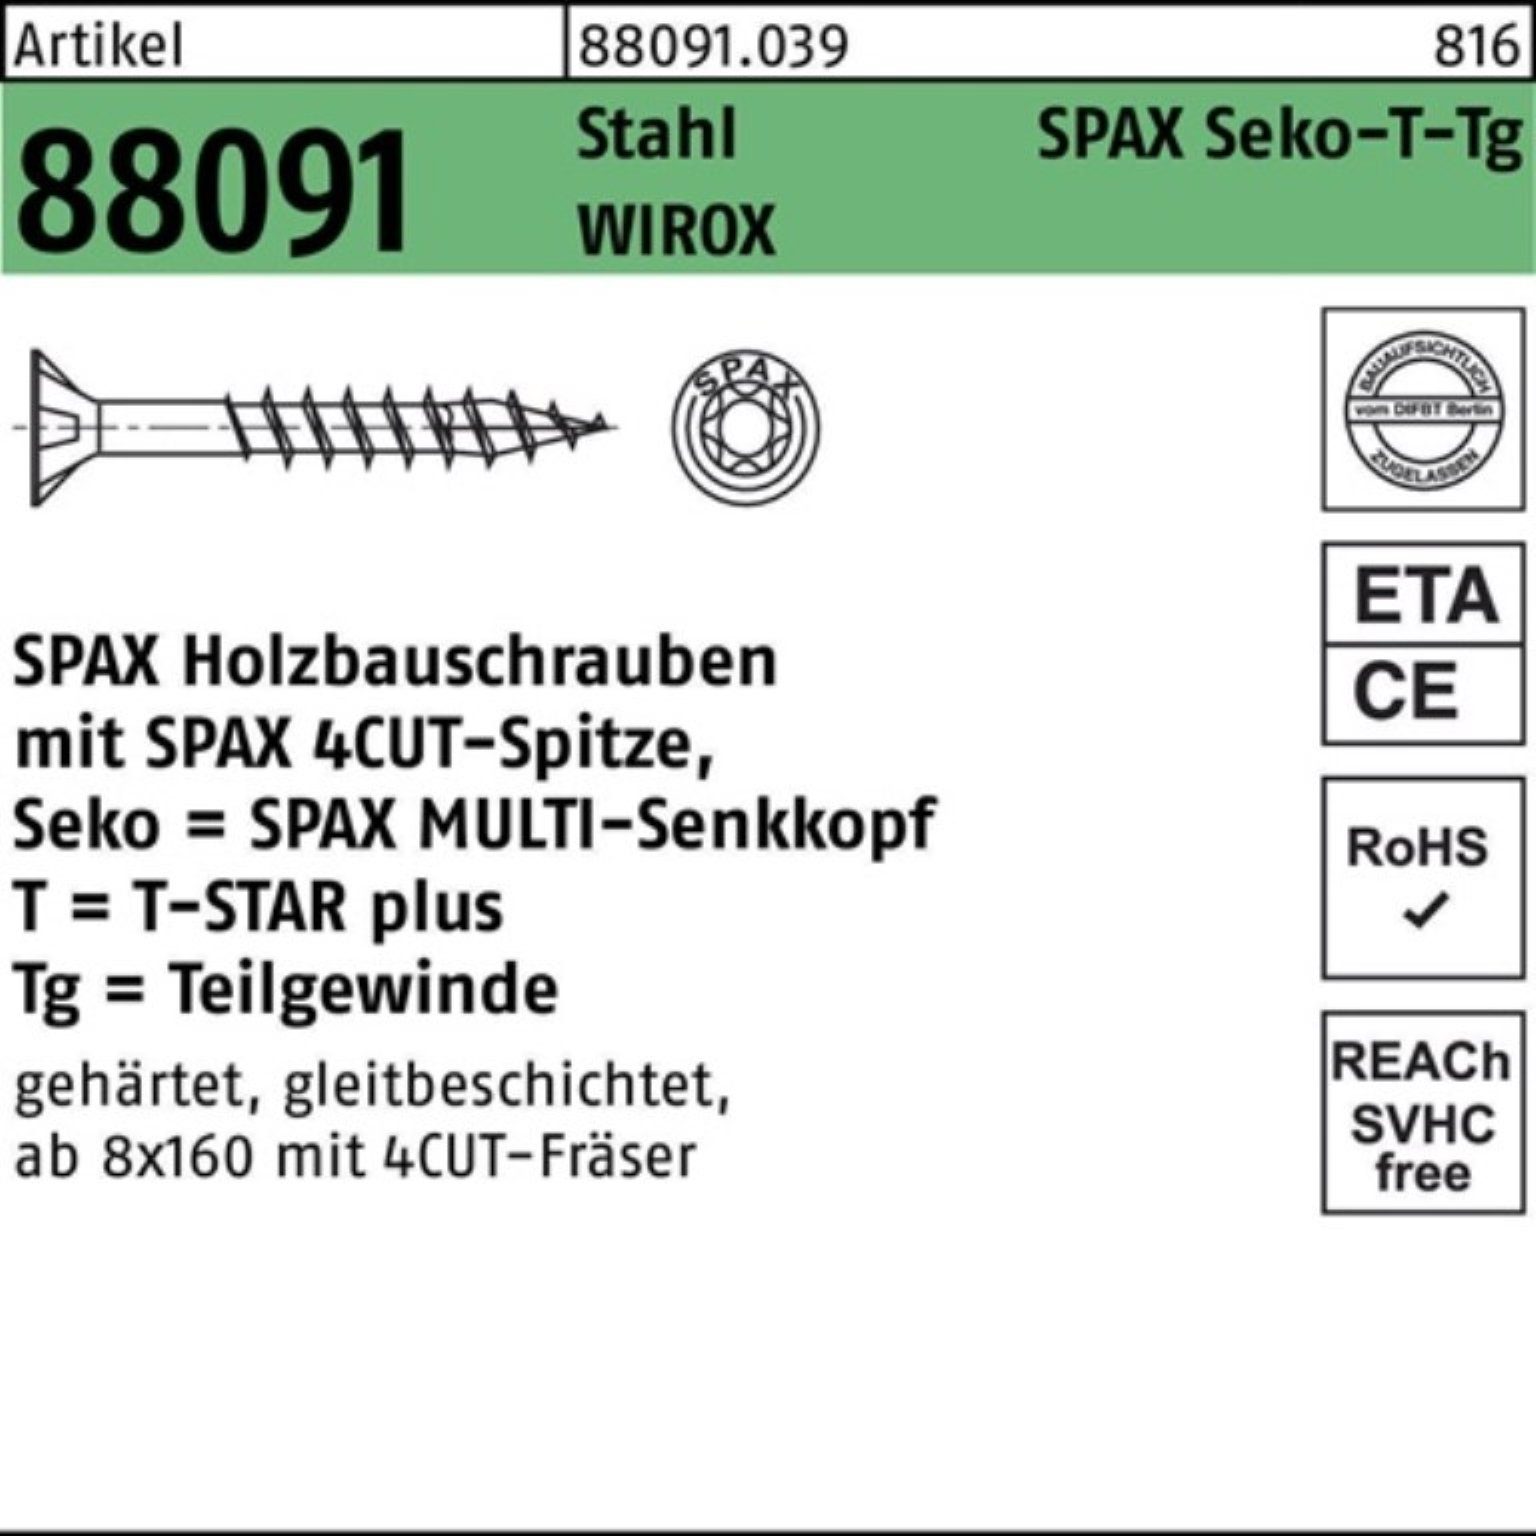 SPAX Schraube 100er Pack Schraube R 88091 SEKO/T-STAR TG 10x 300/80-T50 Stahl WIROX